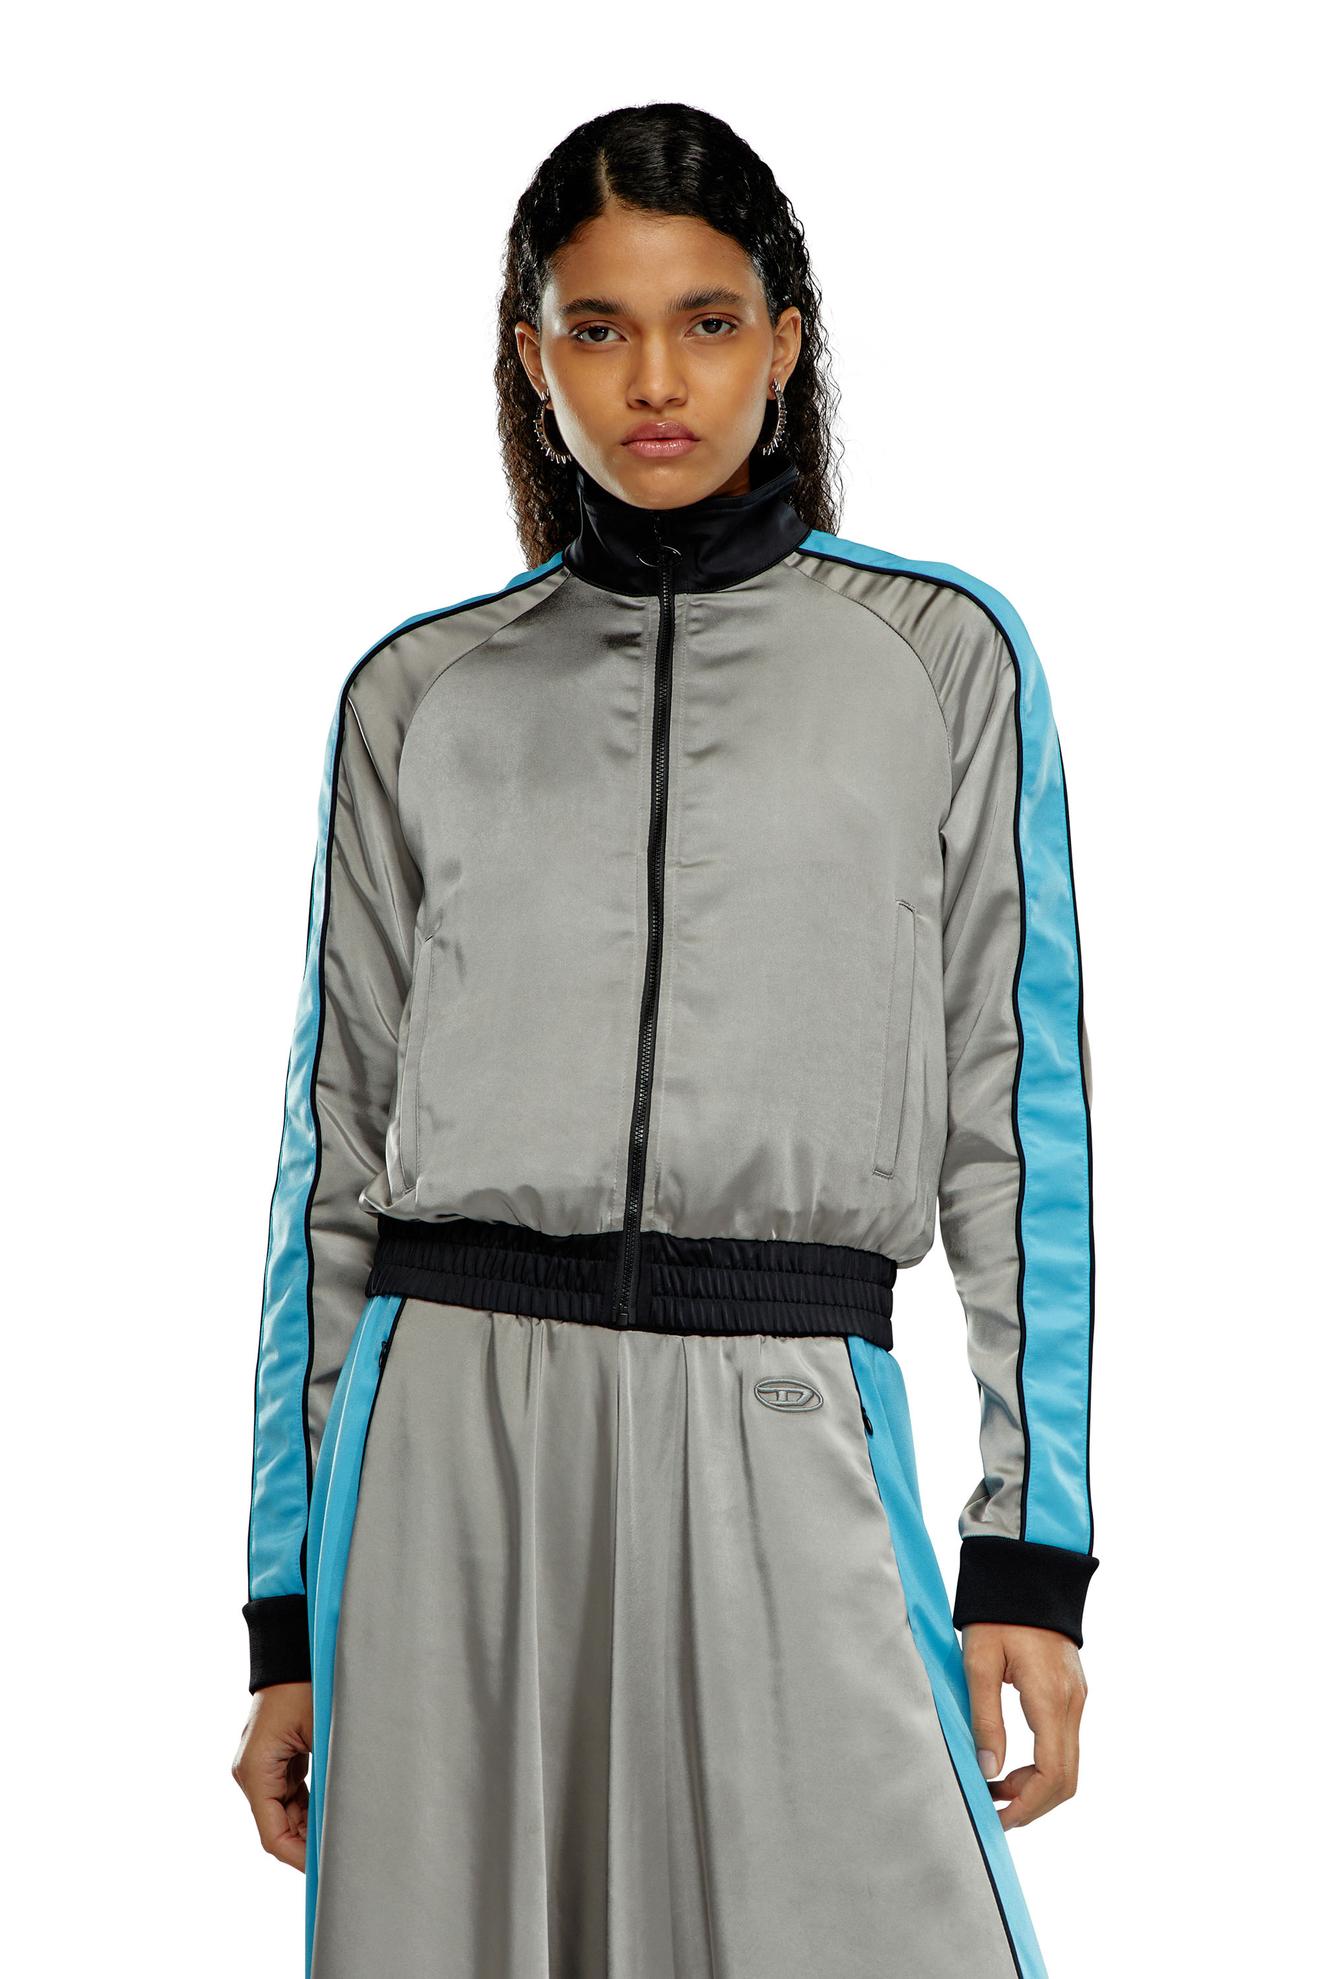 Προσφορά Mixed-material track jacket with side stripes για 284€ σε DIESEL